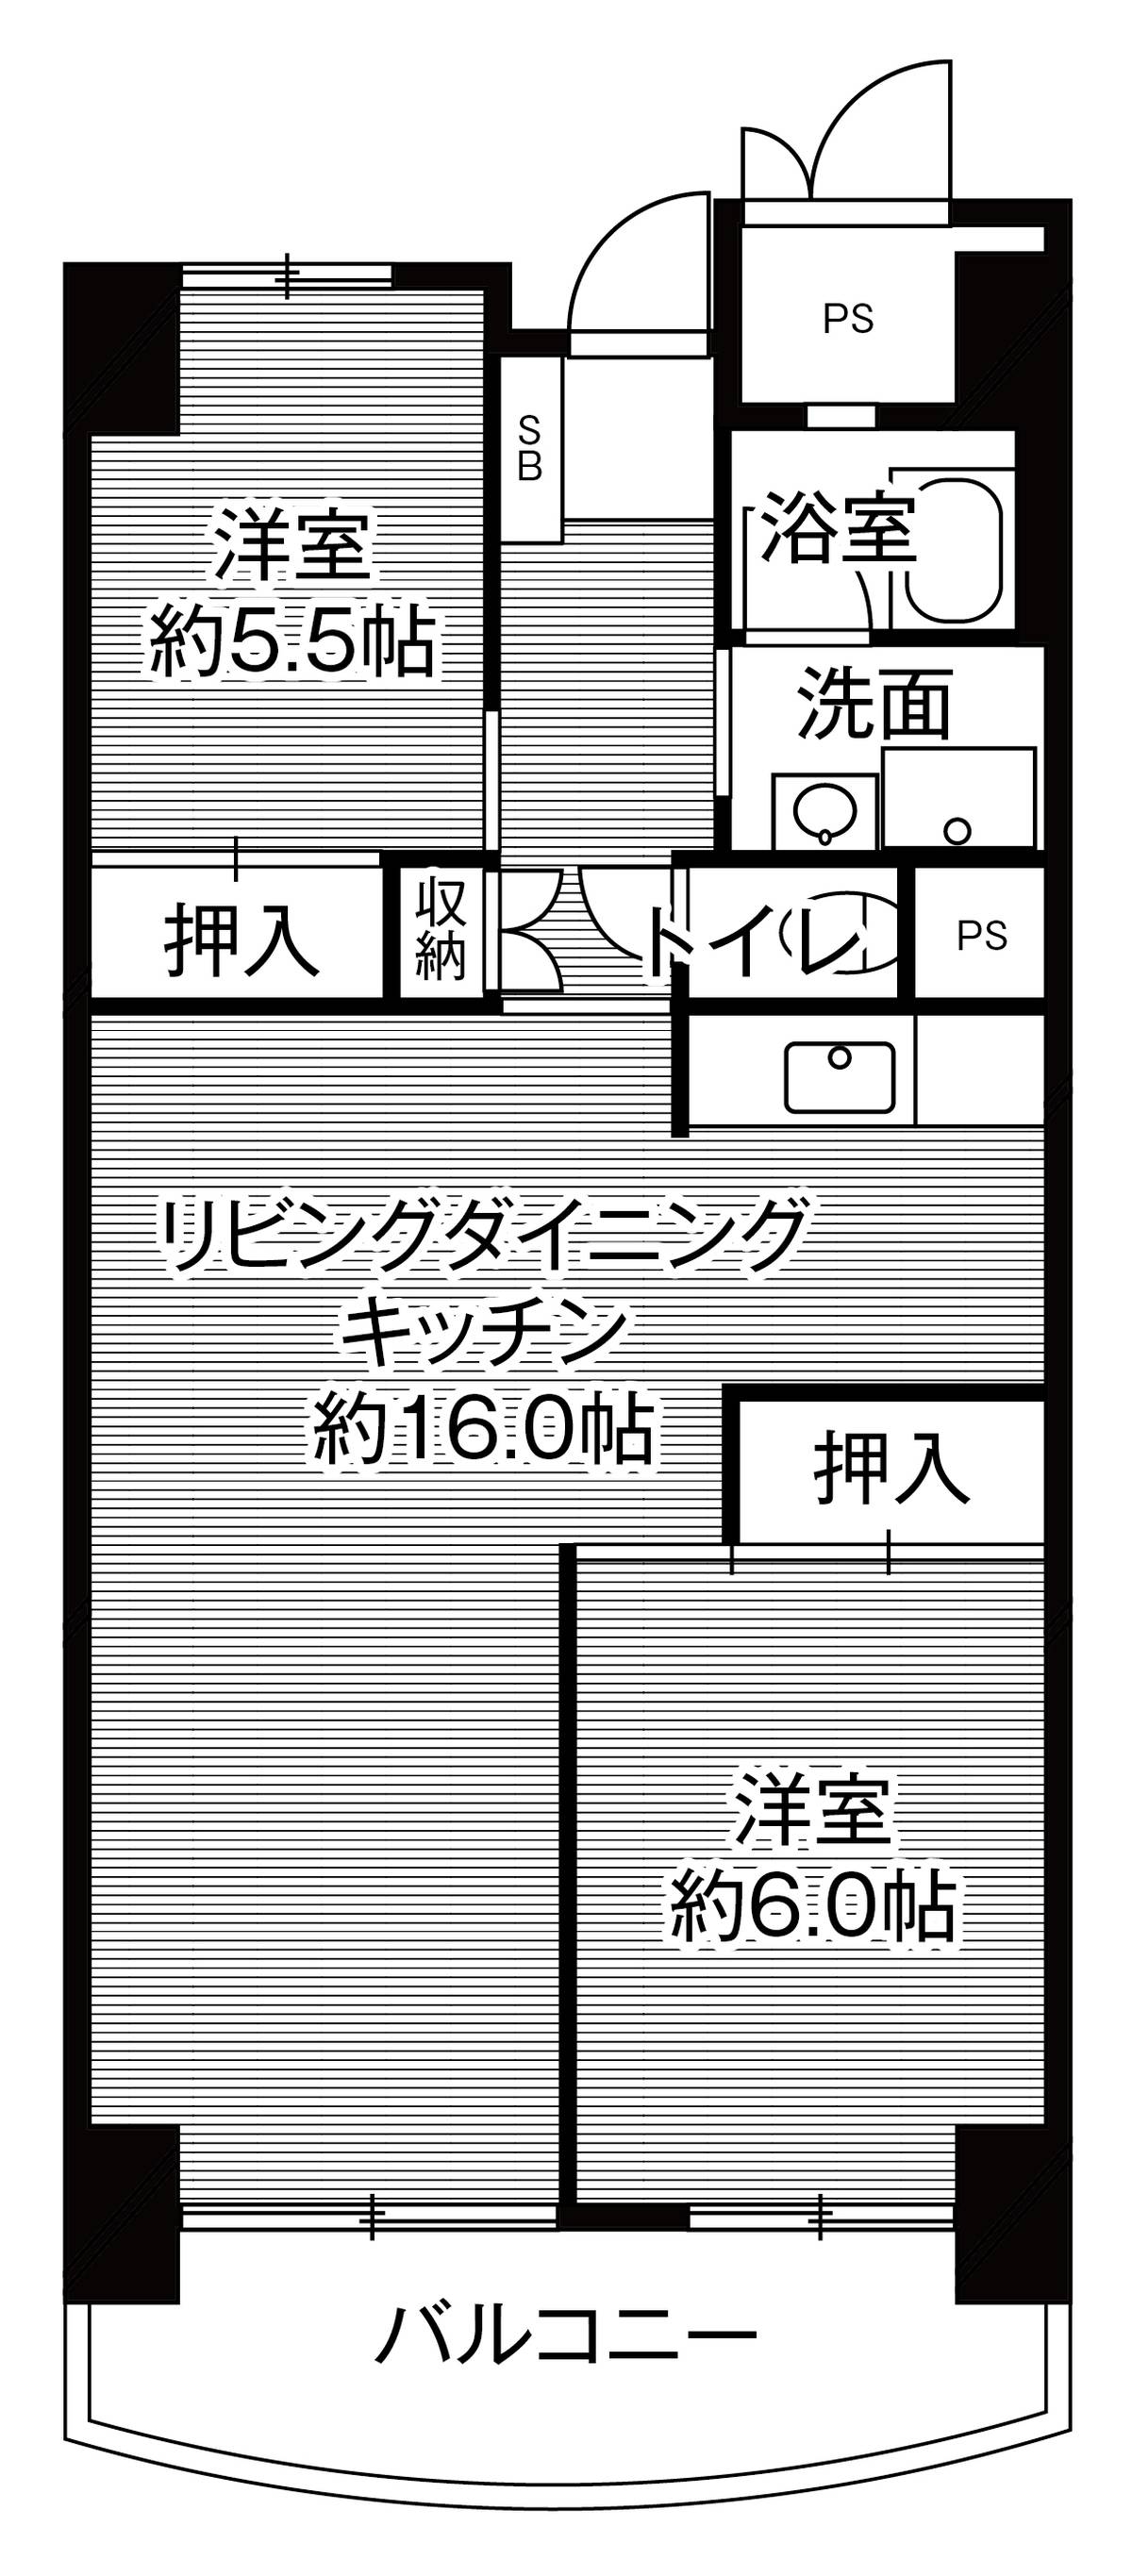 Sơ đồ phòng 2LDK của Village House Kashiihama Tower ở Higashi-ku